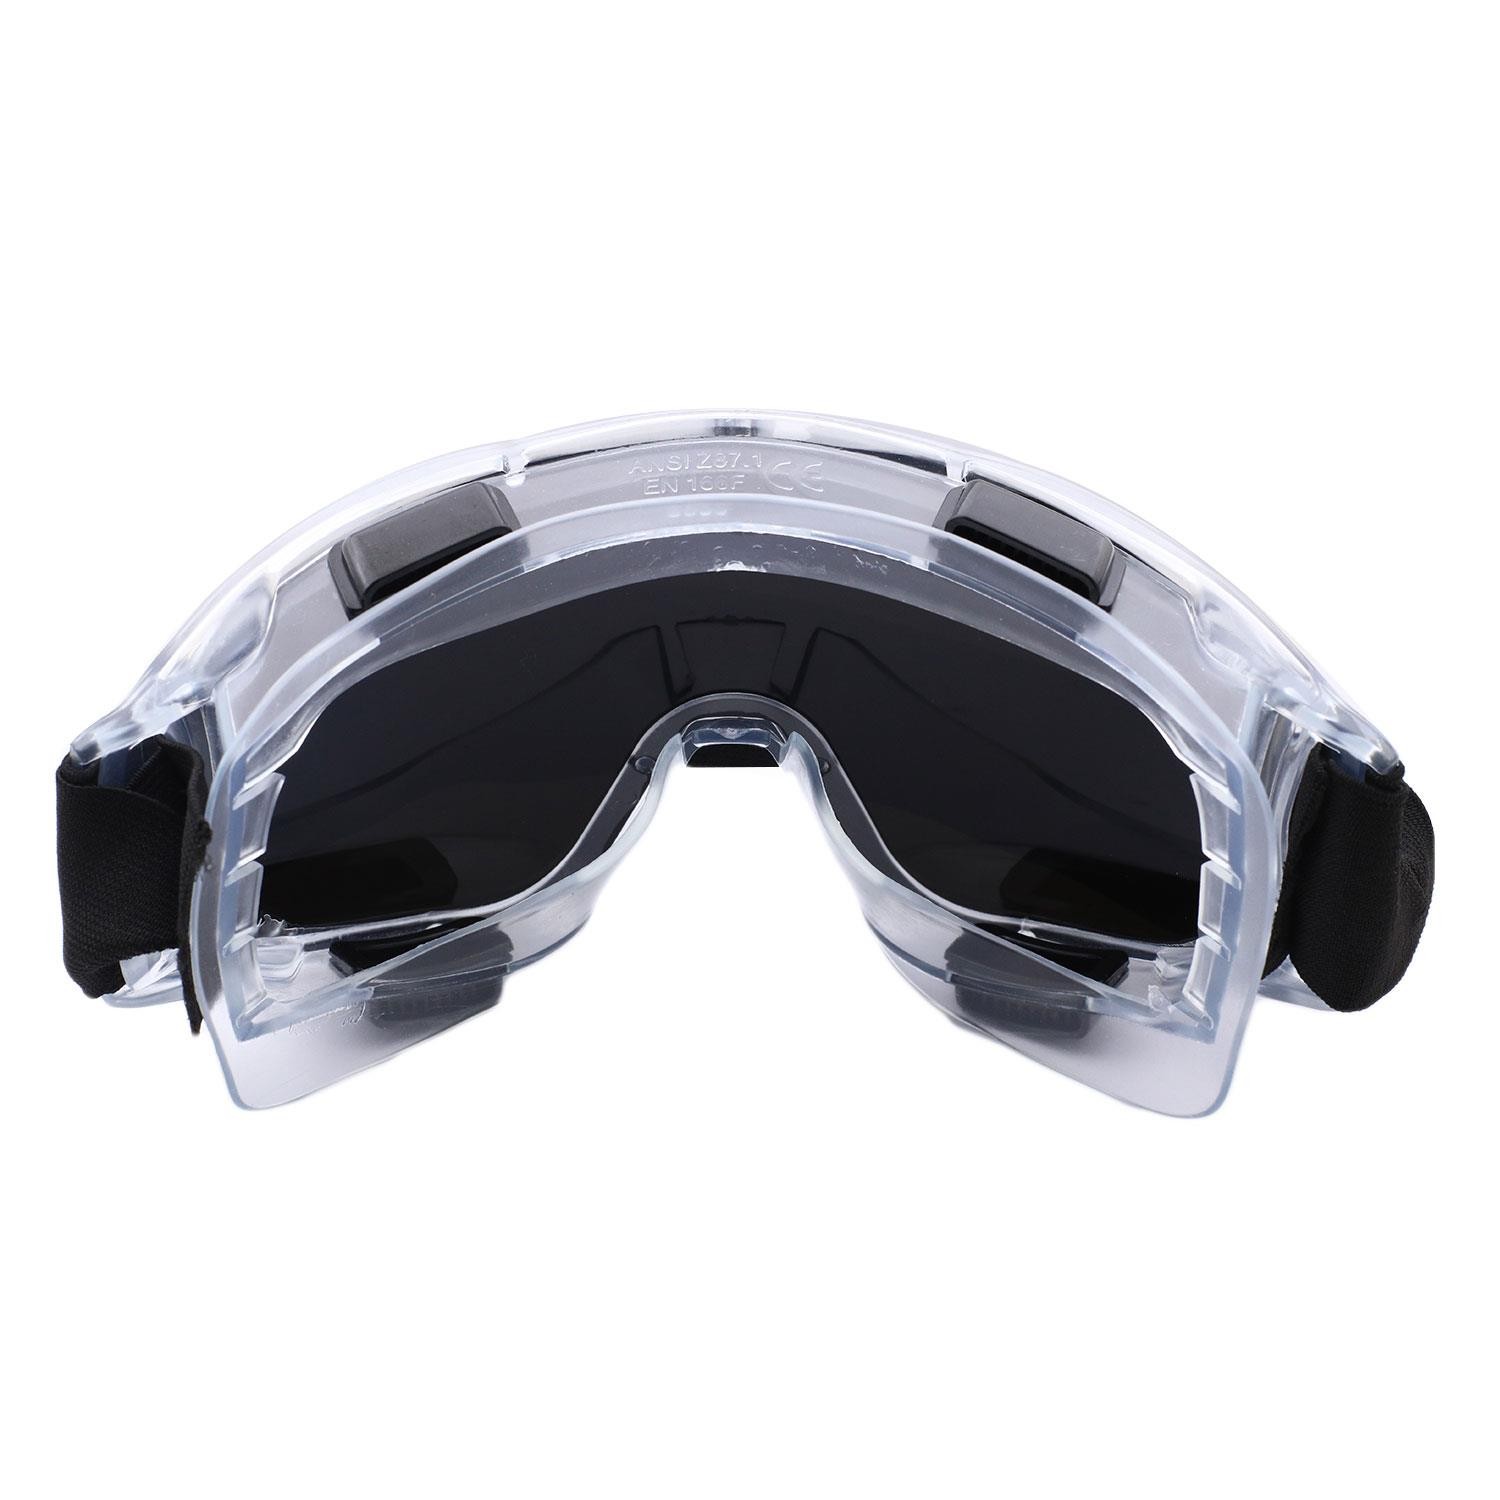 İş Güvenlik Gözlüğü Antifog Buğulanmaz Koruyucu Gözlük Ventilli S550 Gümüş